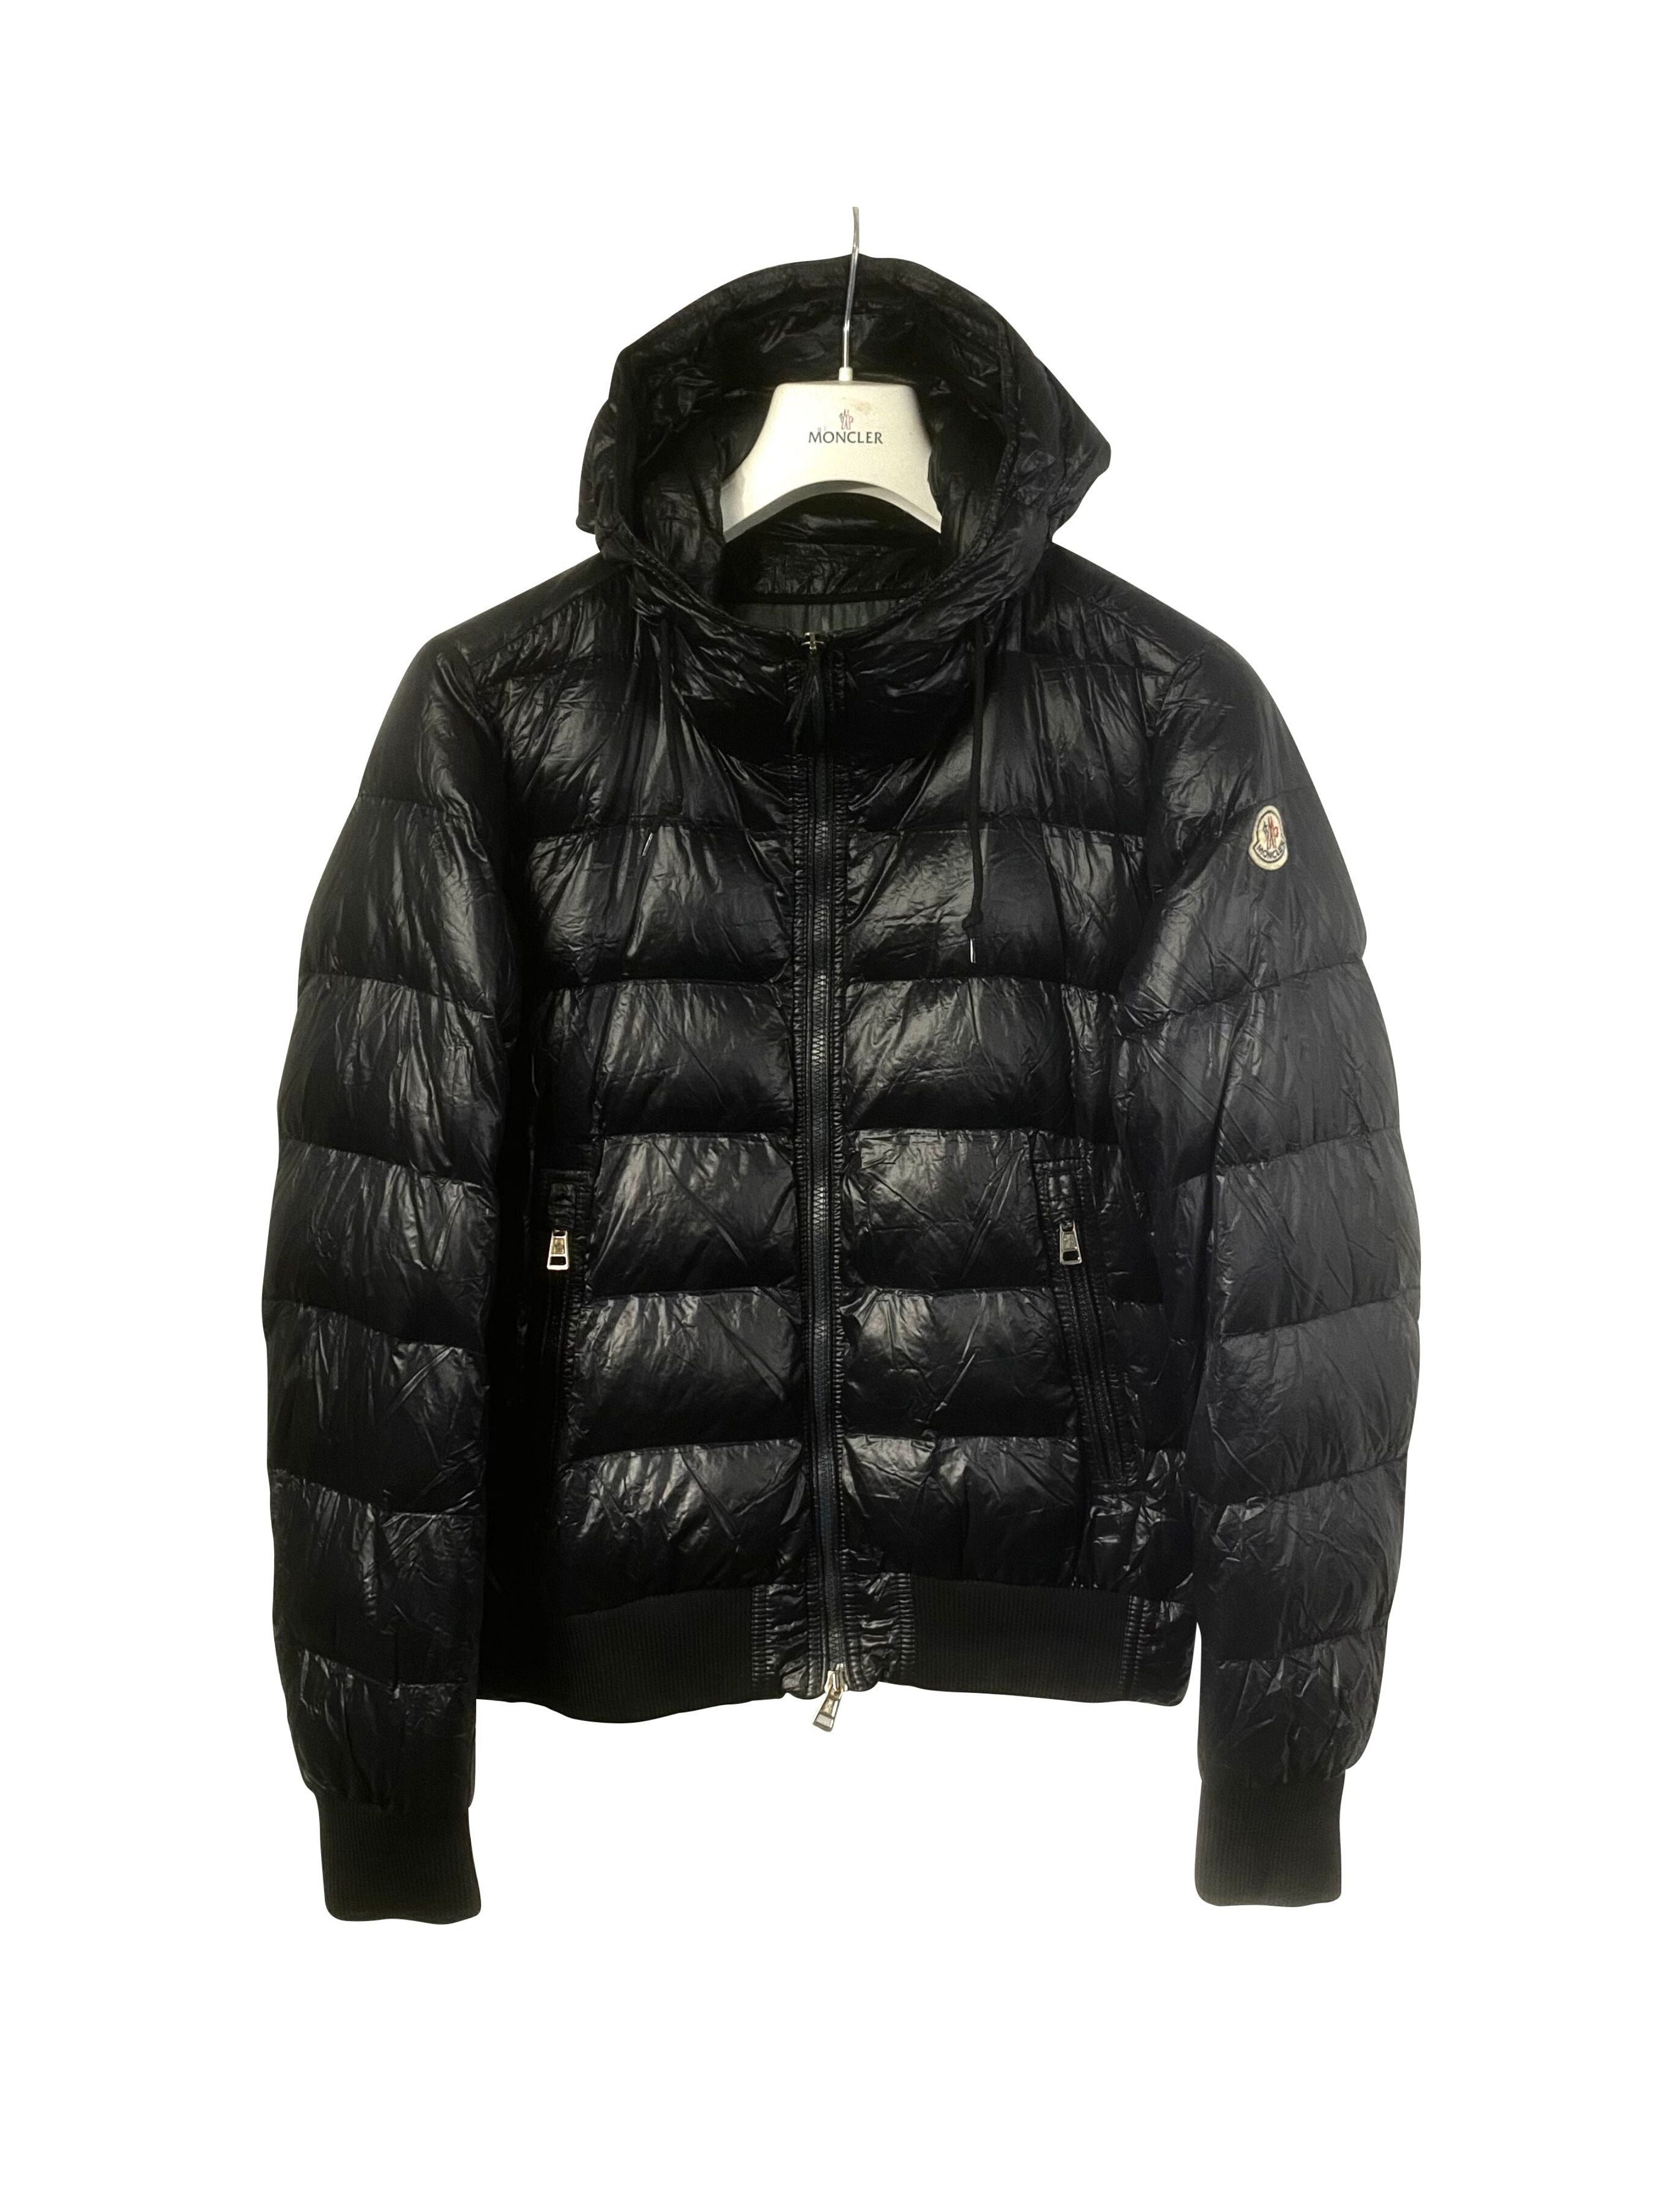 Moncler 'Marque' Style Jacket - Size 2 - Colour: Black – HB 